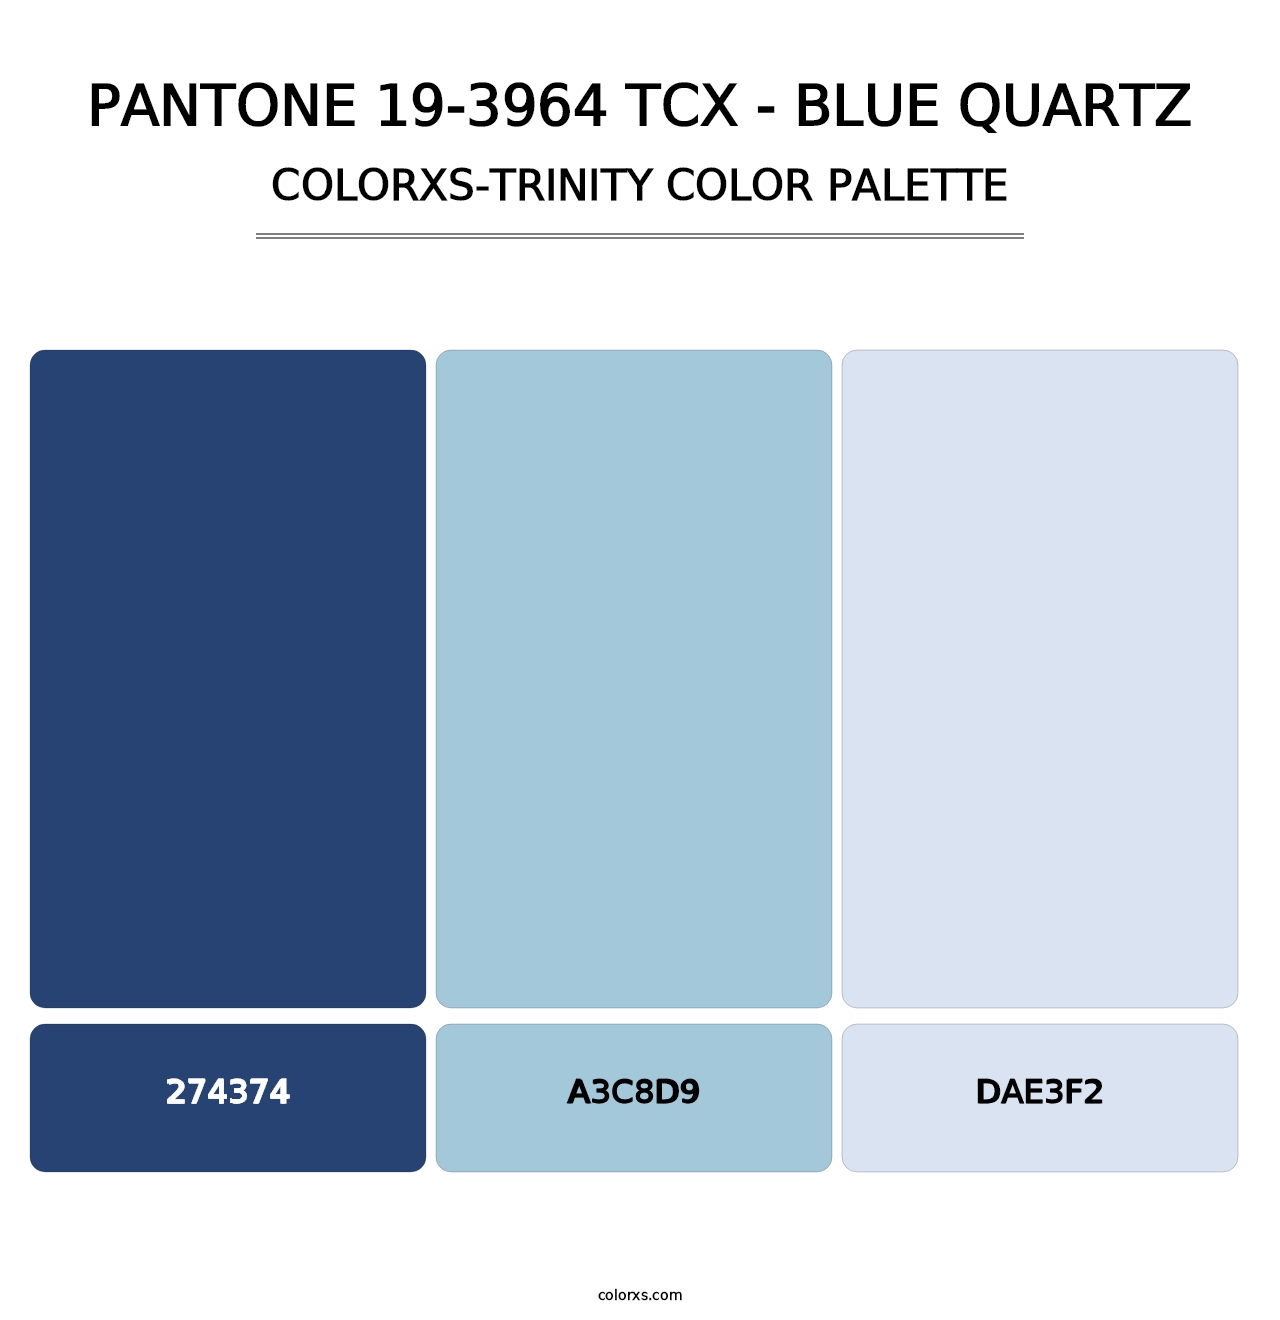 PANTONE 19-3964 TCX - Blue Quartz - Colorxs Trinity Palette